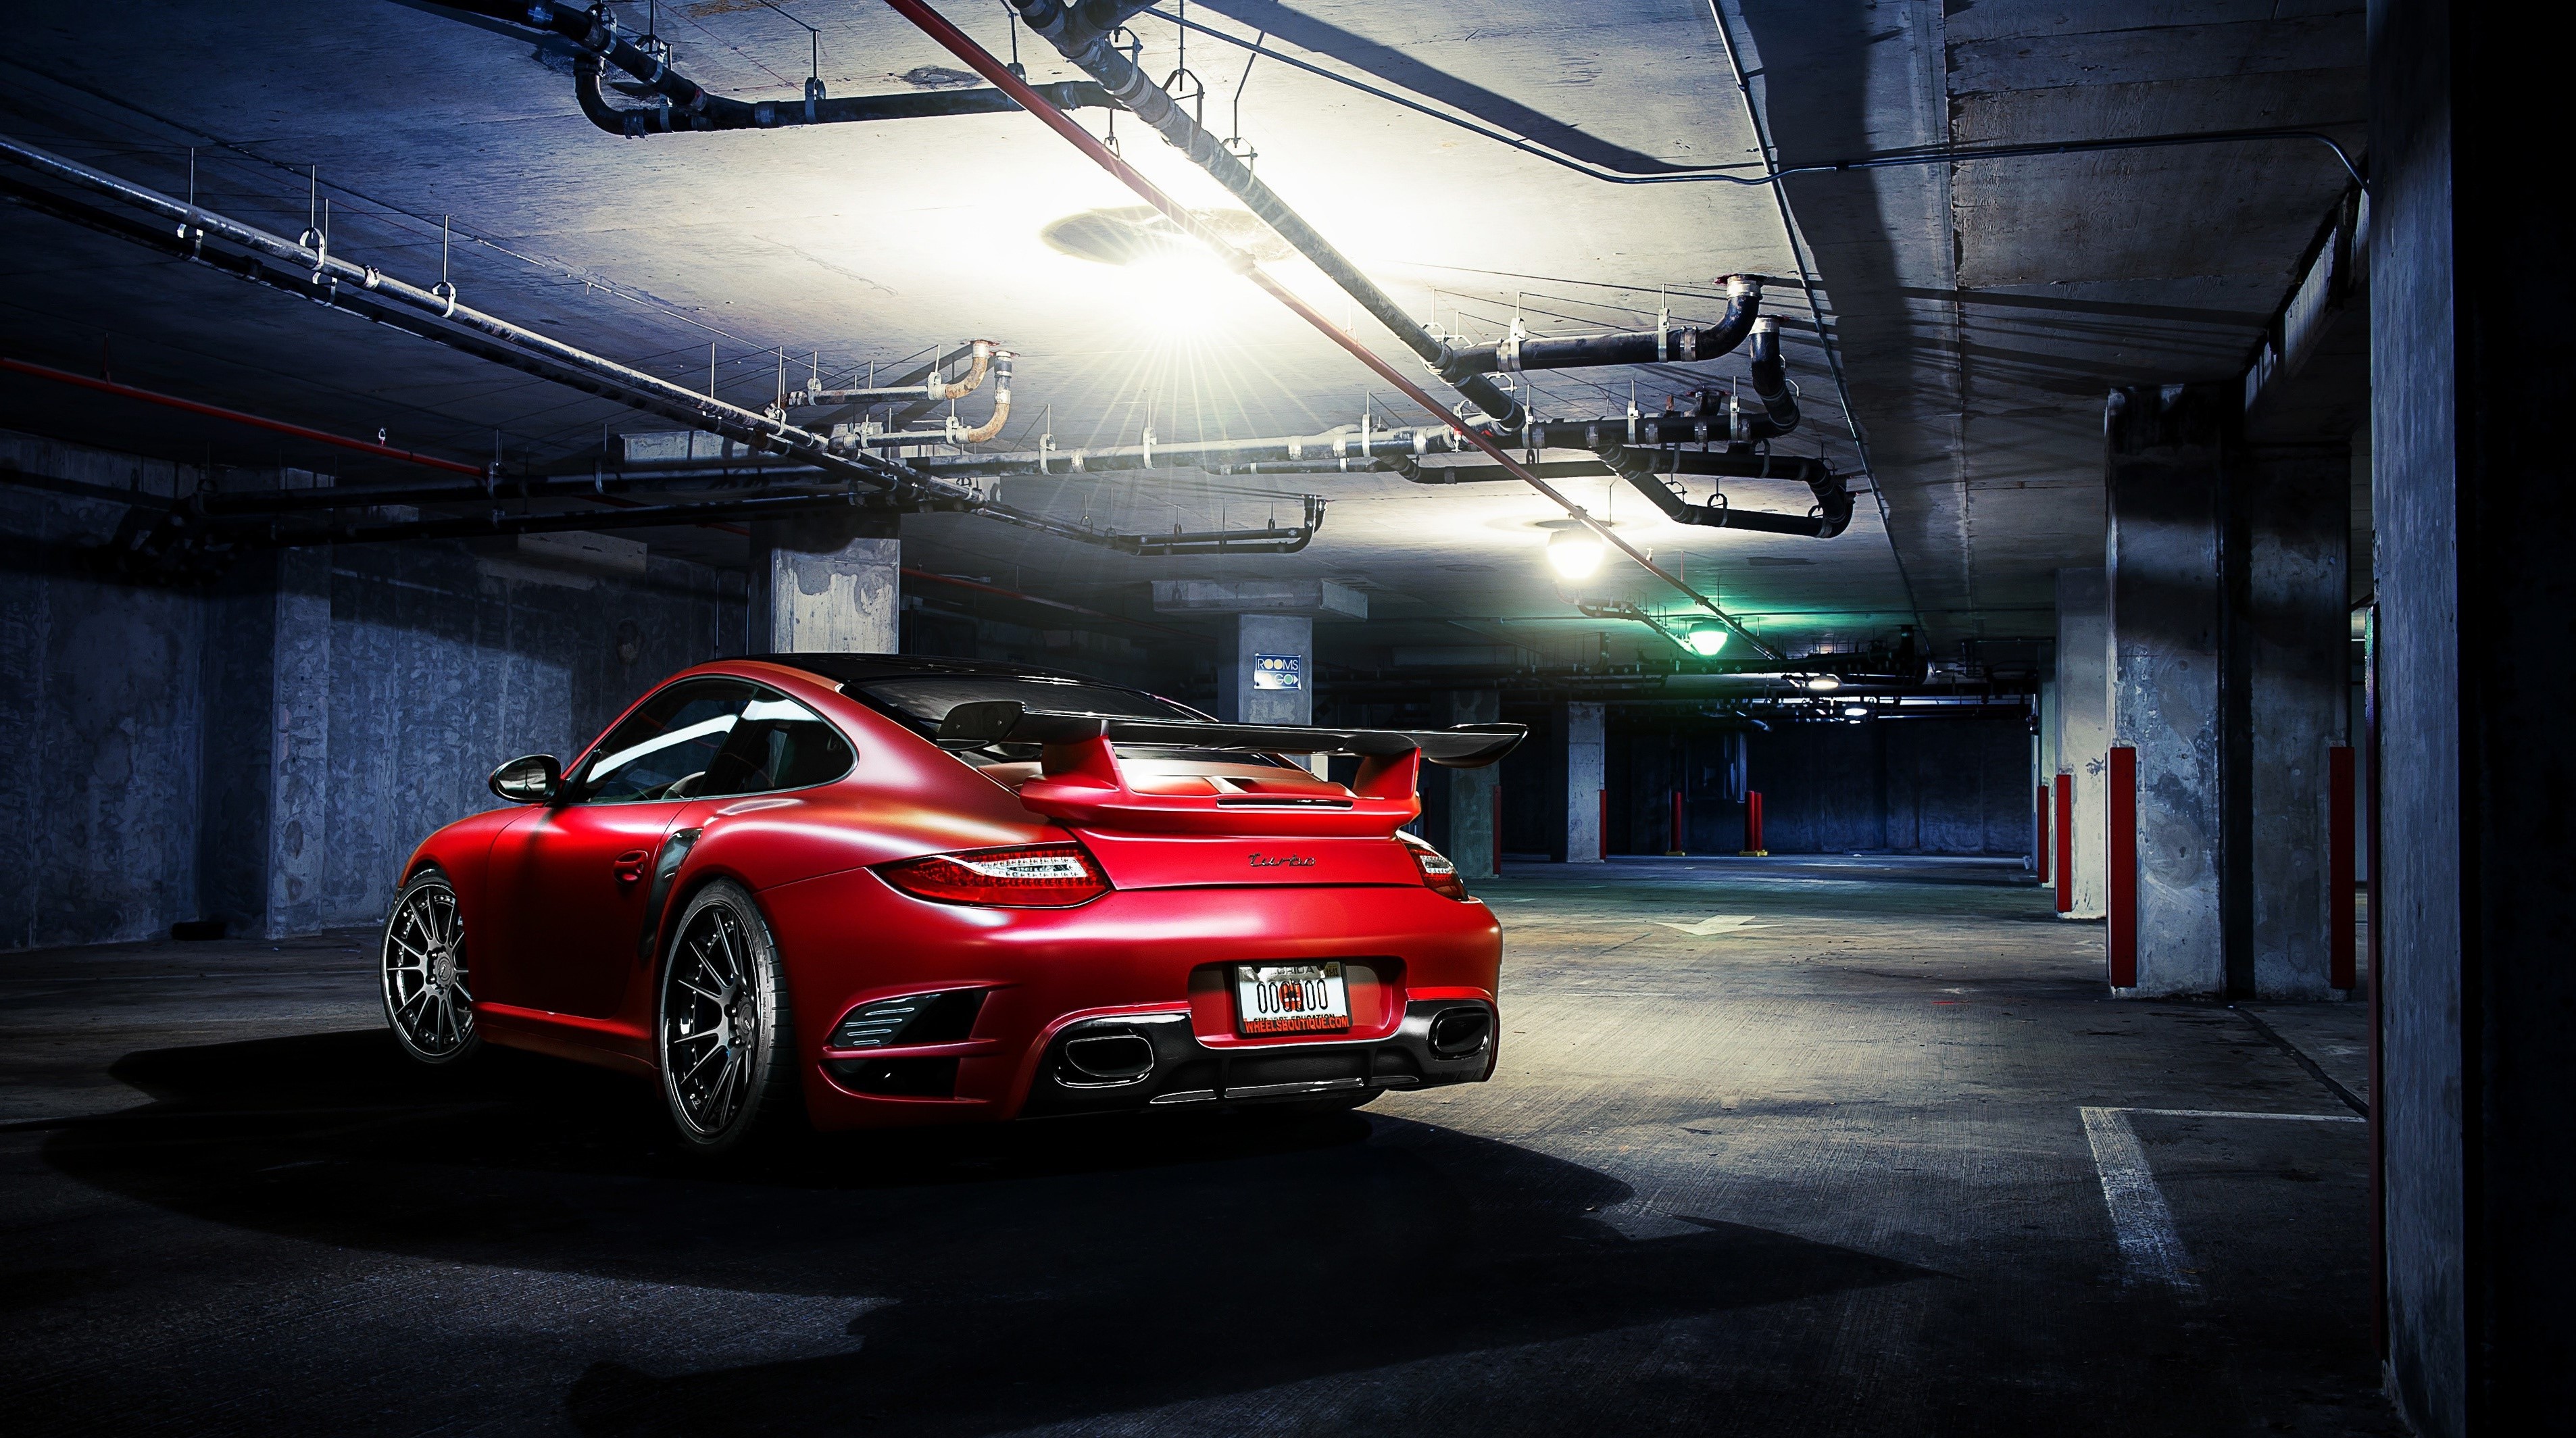 A red Porsche 911 in an underground parking garage is rear-ended.